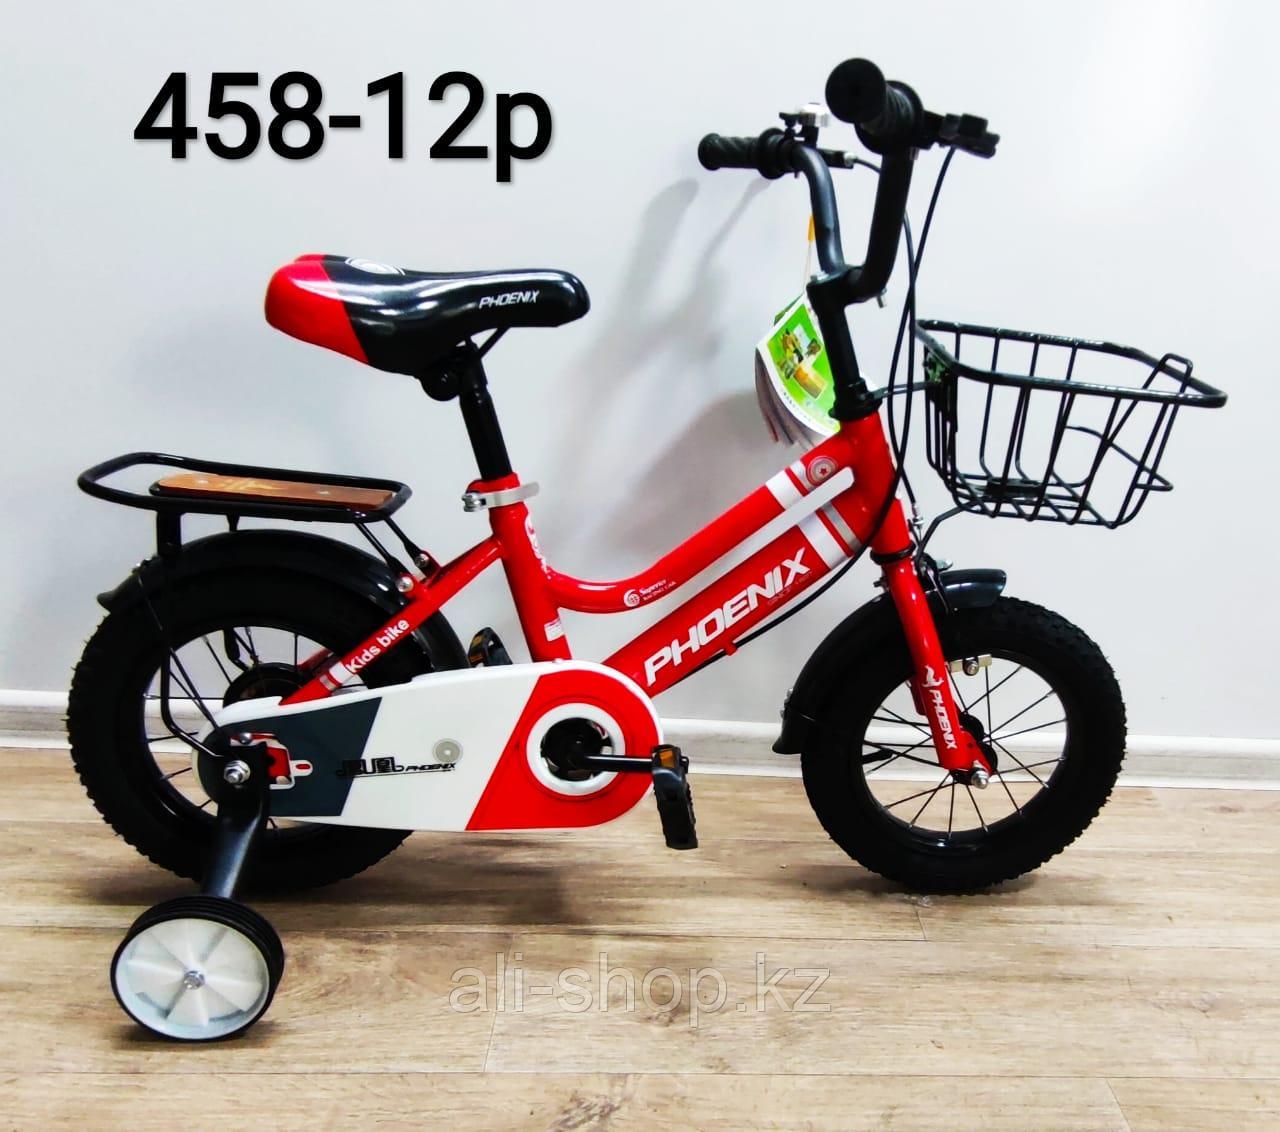 Велосипед Phoenix красный оригинал детский с холостым ходом 12 размер